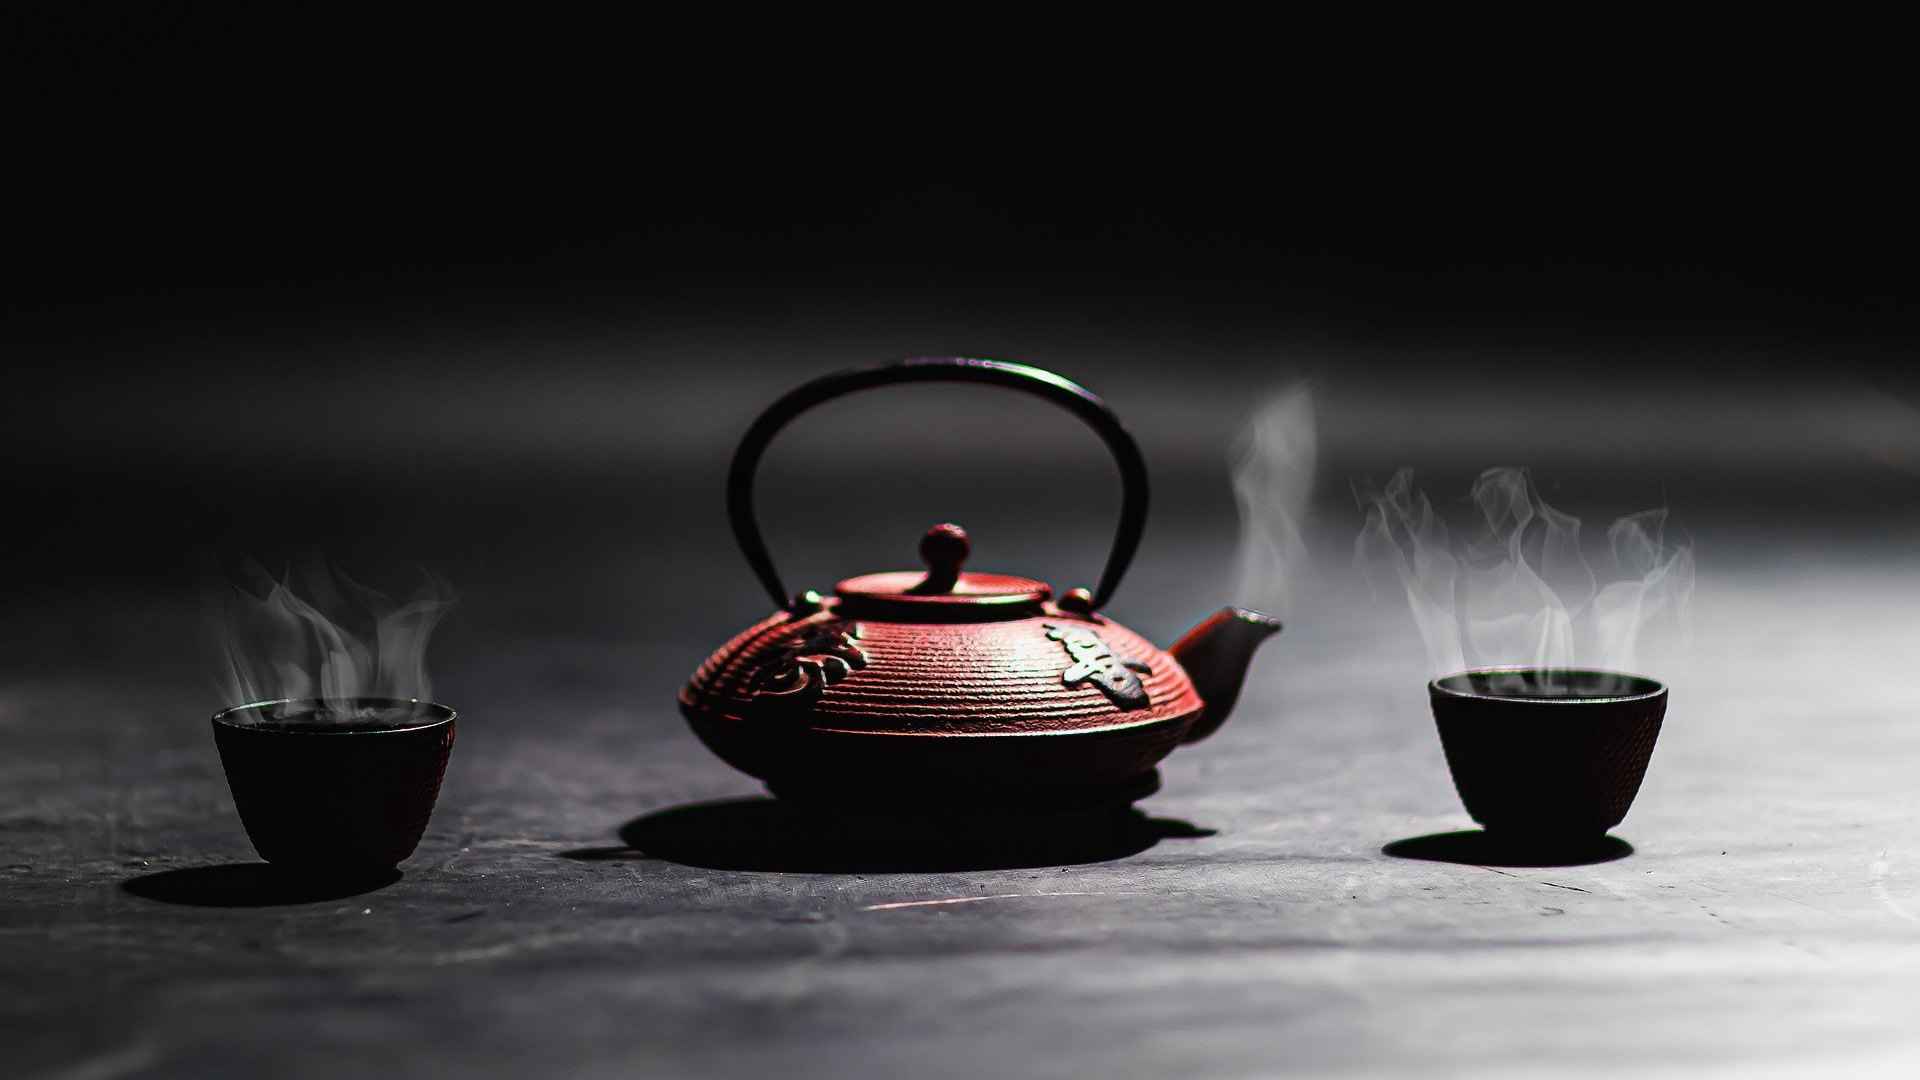 茶壶，茶杯 热茶 静物摄影桌面壁纸图片